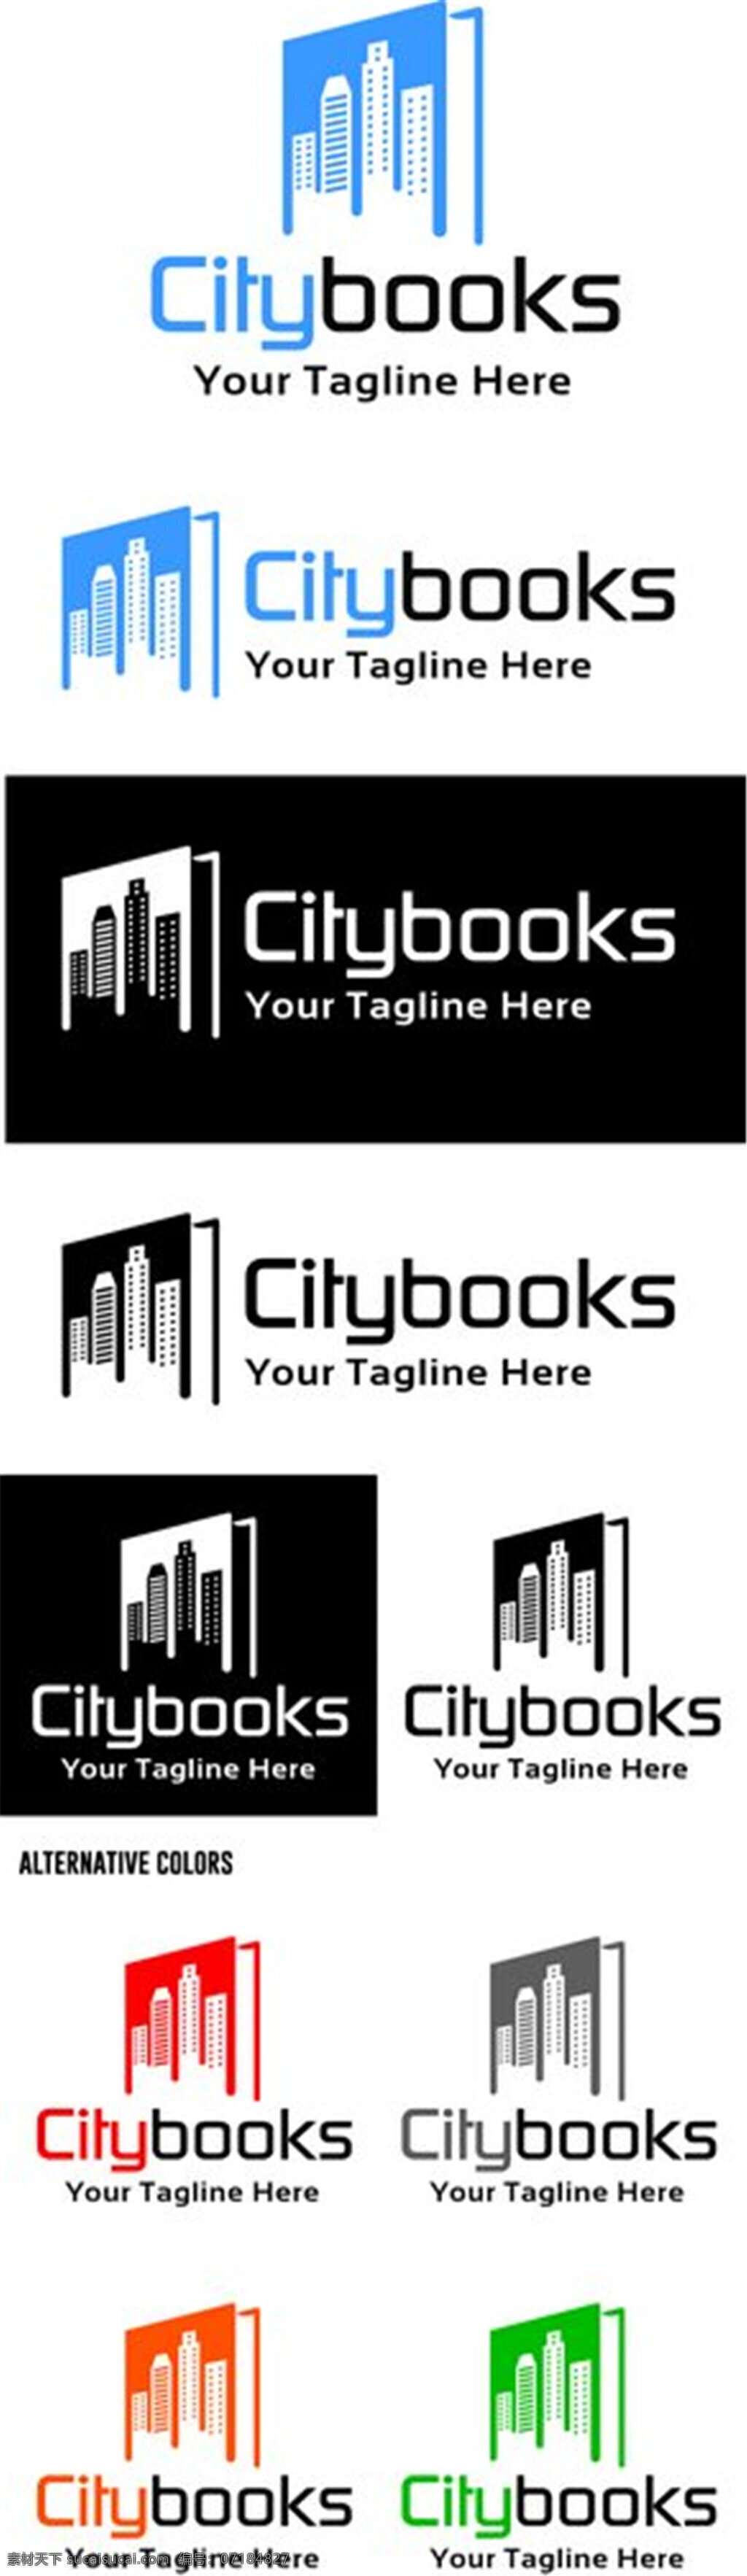 彩色 城市 书本 标志 彩色城市书本 个性创意标志 logo设计 创意 logo 图形 商标设计 企业logo 公司logo 行业标志 标志图标 矢量素材